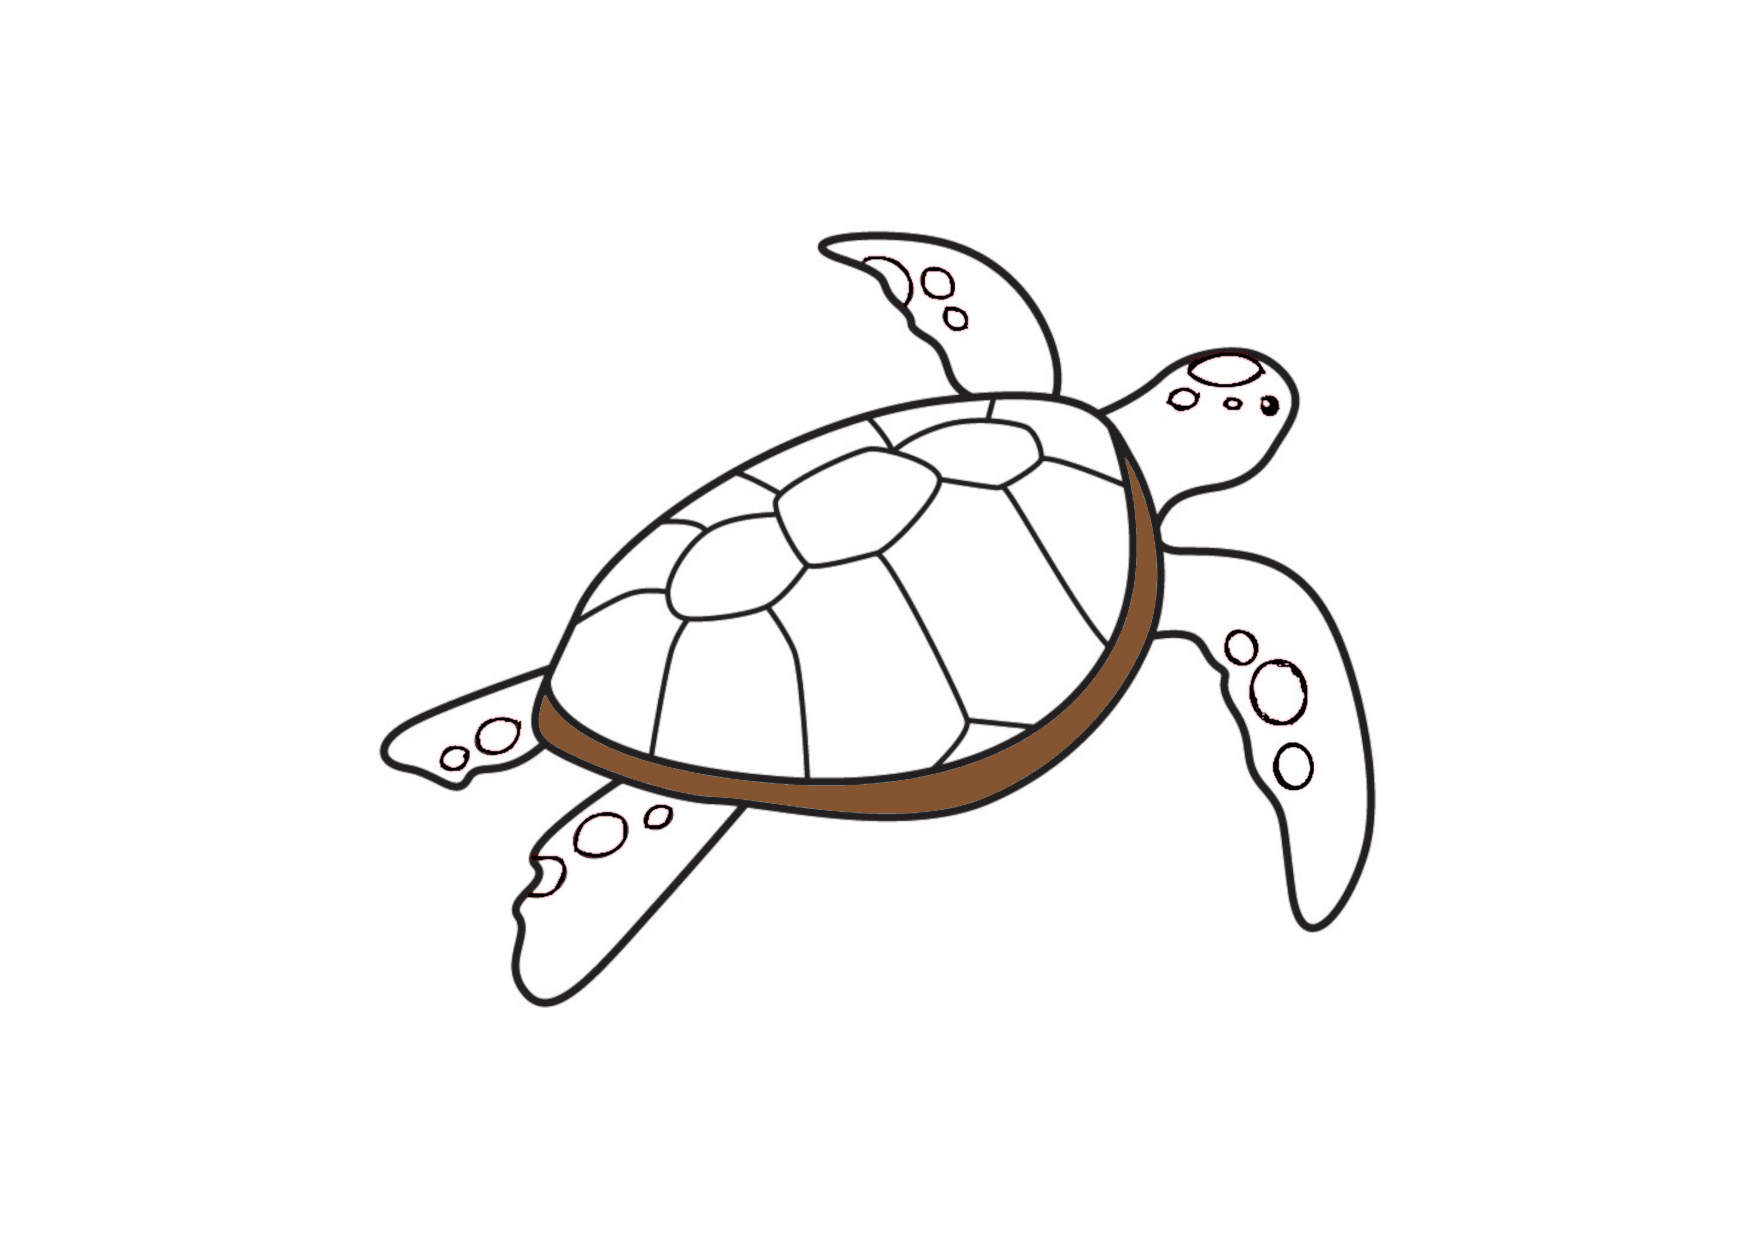 99+ Tranh Tô Màu Con Rùa Cực đáng Yêu Dành Cho Bé - Đề án 2020 - Tổng Hợp  Chia Sẻ Hình ảnh, Tranh Vẽ, Biểu Mẫu Trong Lĩnh Vực Giáo Dục